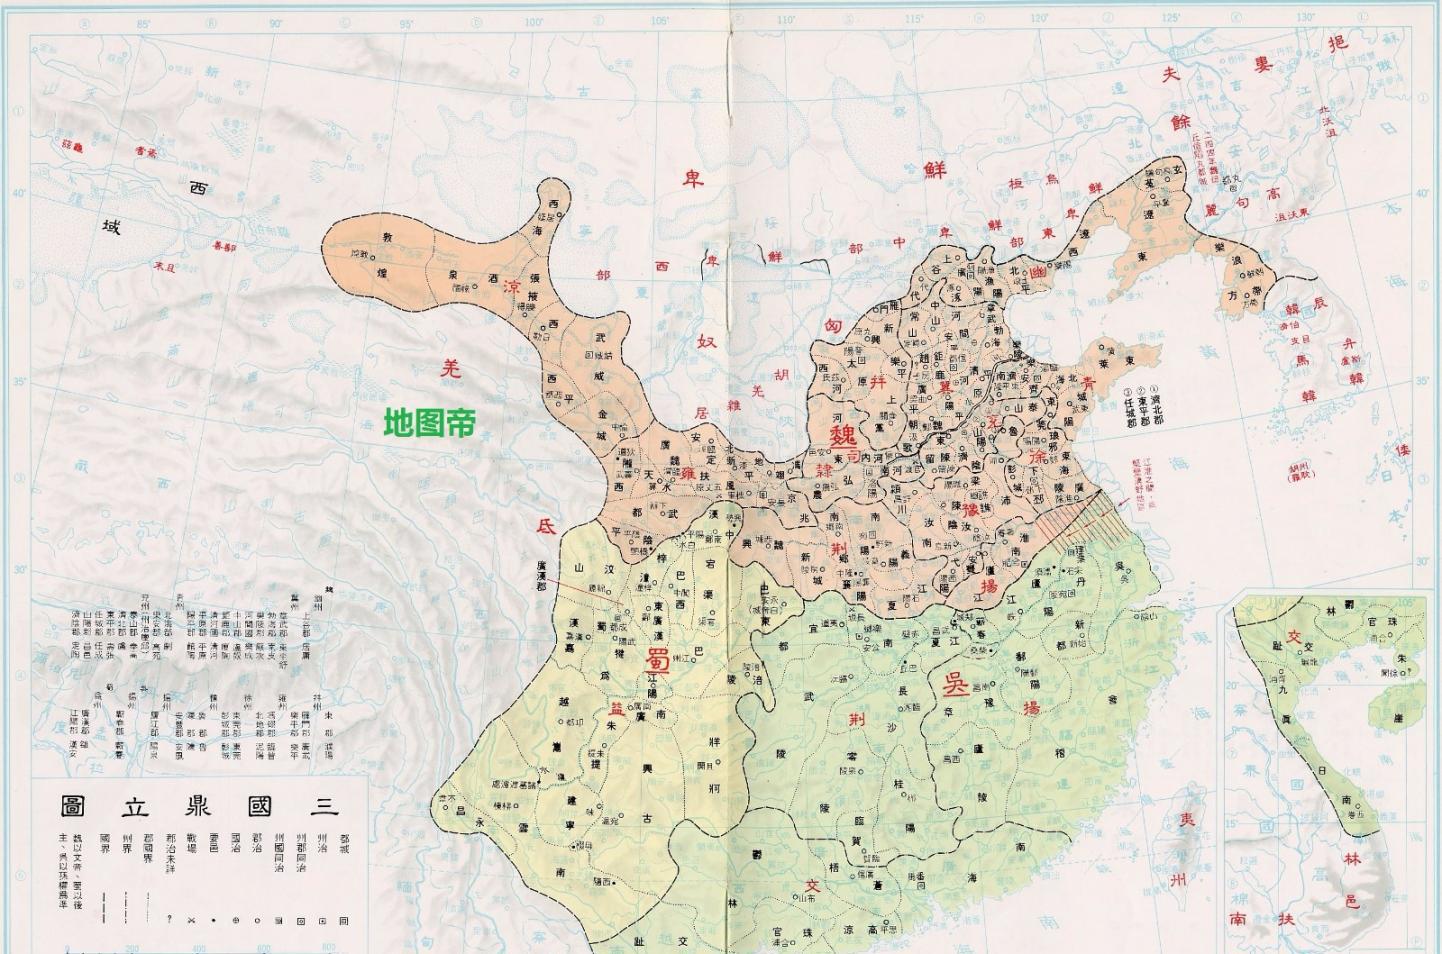 中国台湾出版的中国历朝地图, 绘制精美